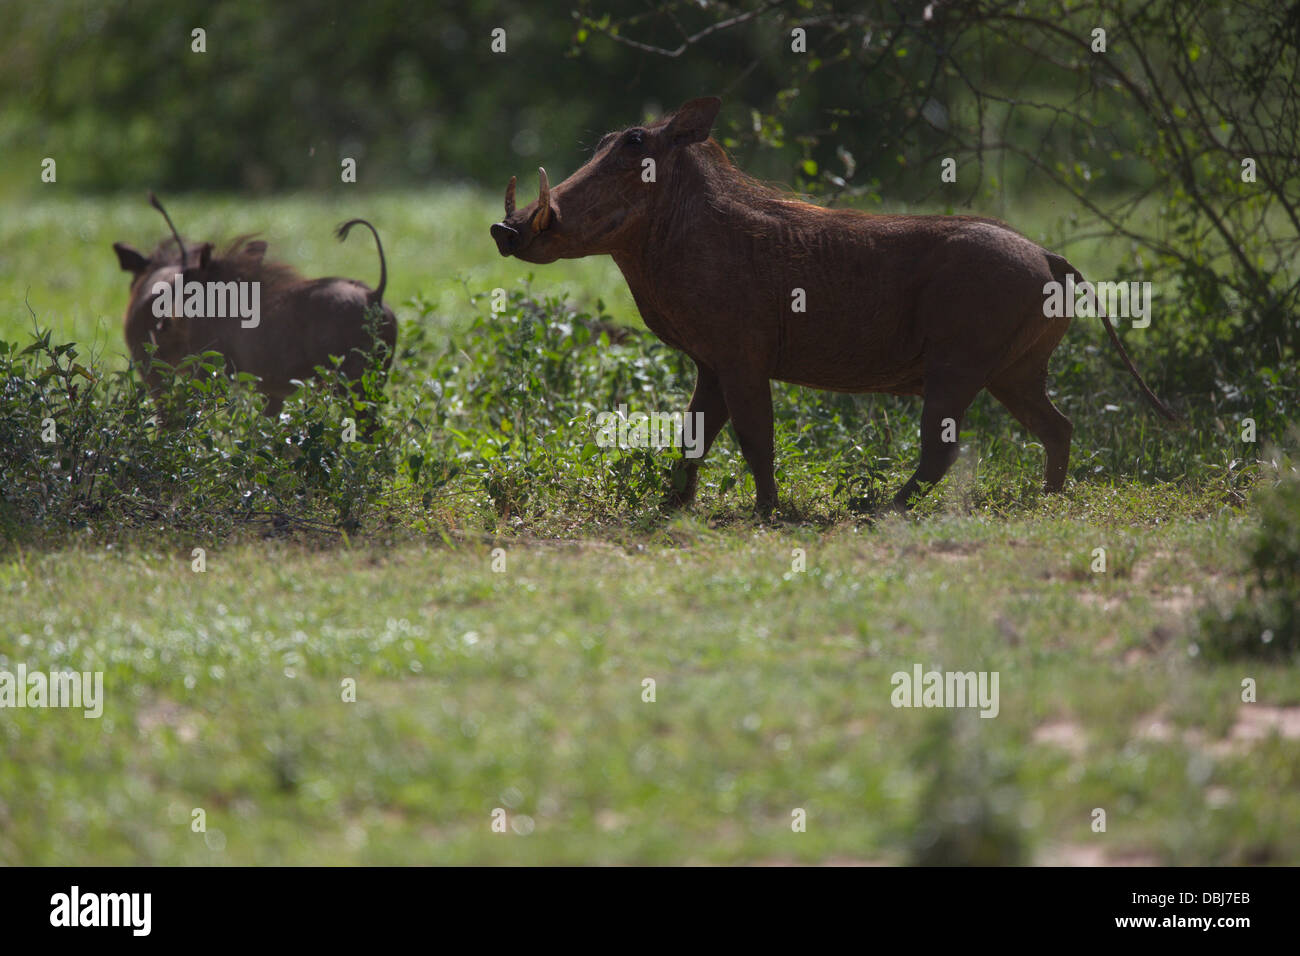 Eine Familie von Warzenschweine oder gemeinsame Warzenschweine (Phacochoerus Africanus). Warzenschwein. Selenkay Conservancy. Kenia, Afrika. Stockfoto